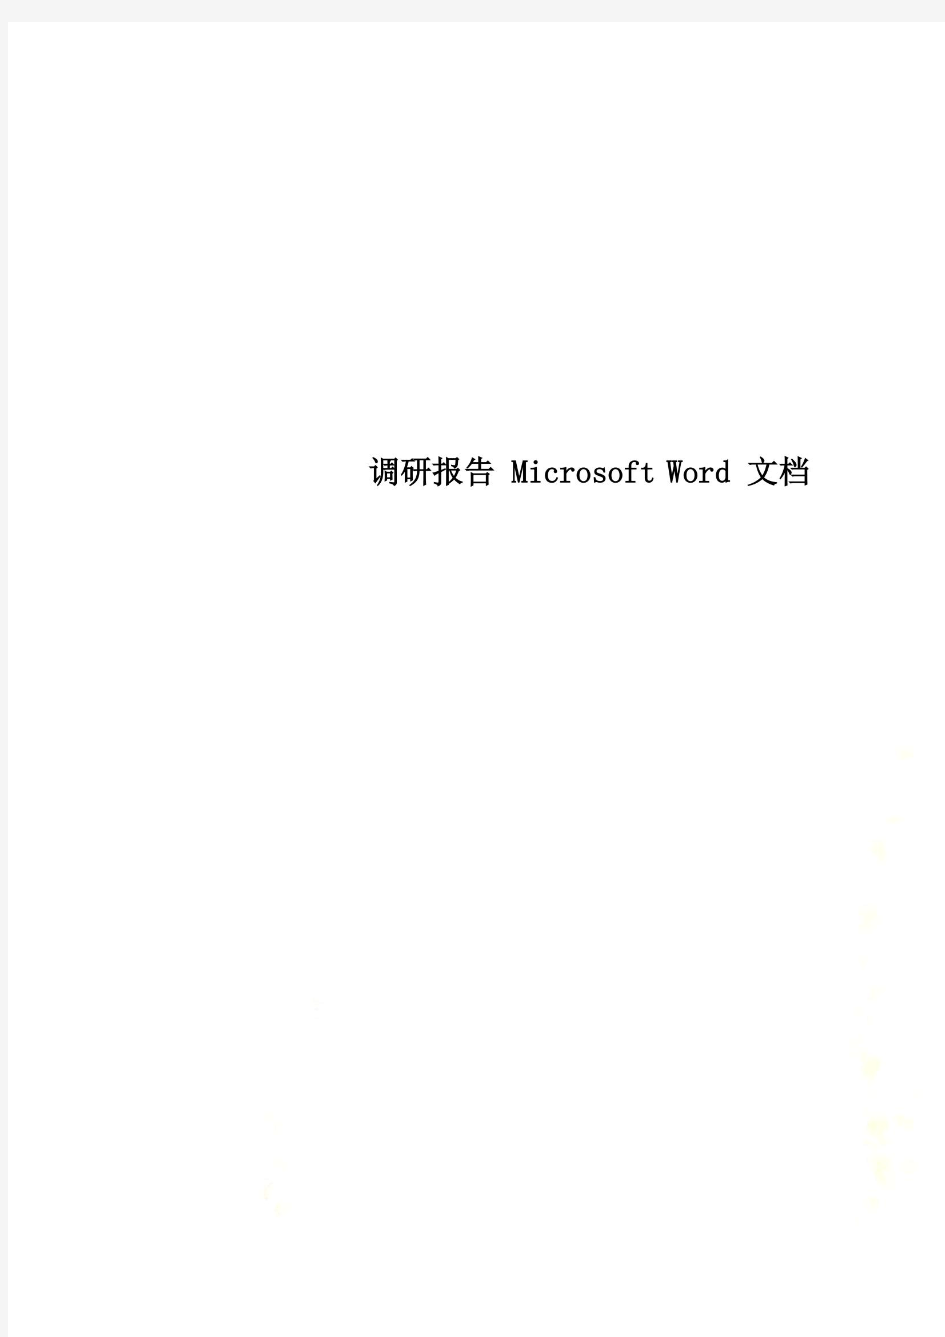 调研报告 Microsoft Word 文档